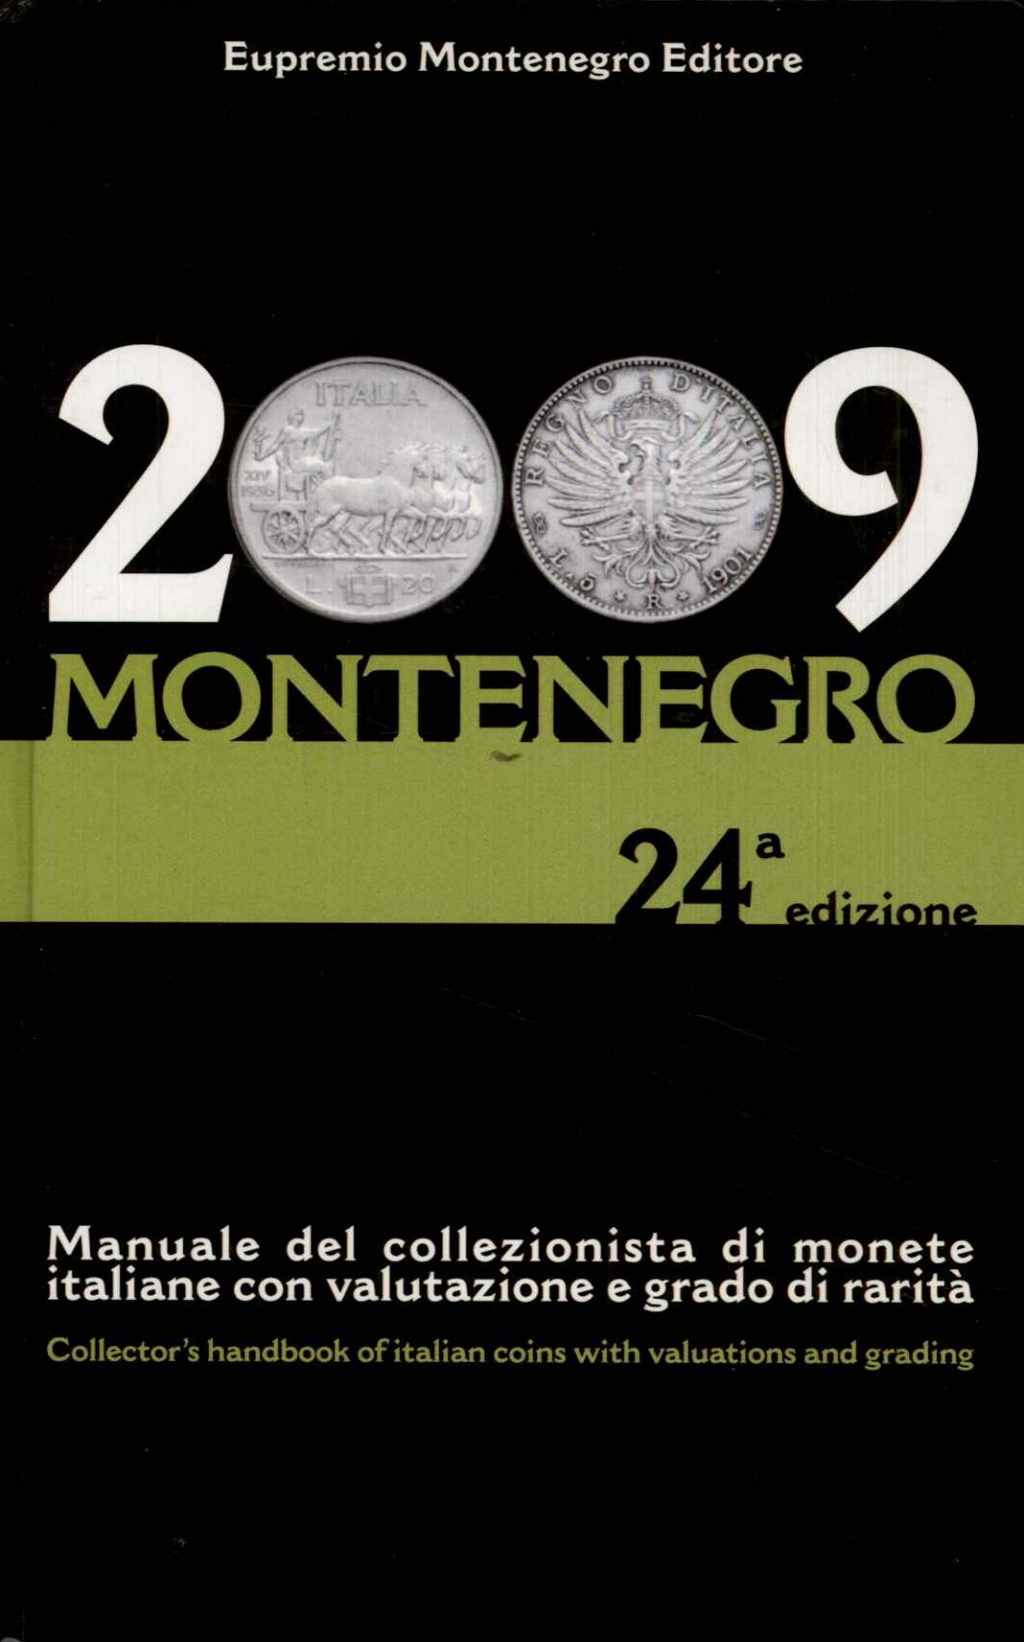 Montenegro 2009. 24° edizione. Manuale del collezionista